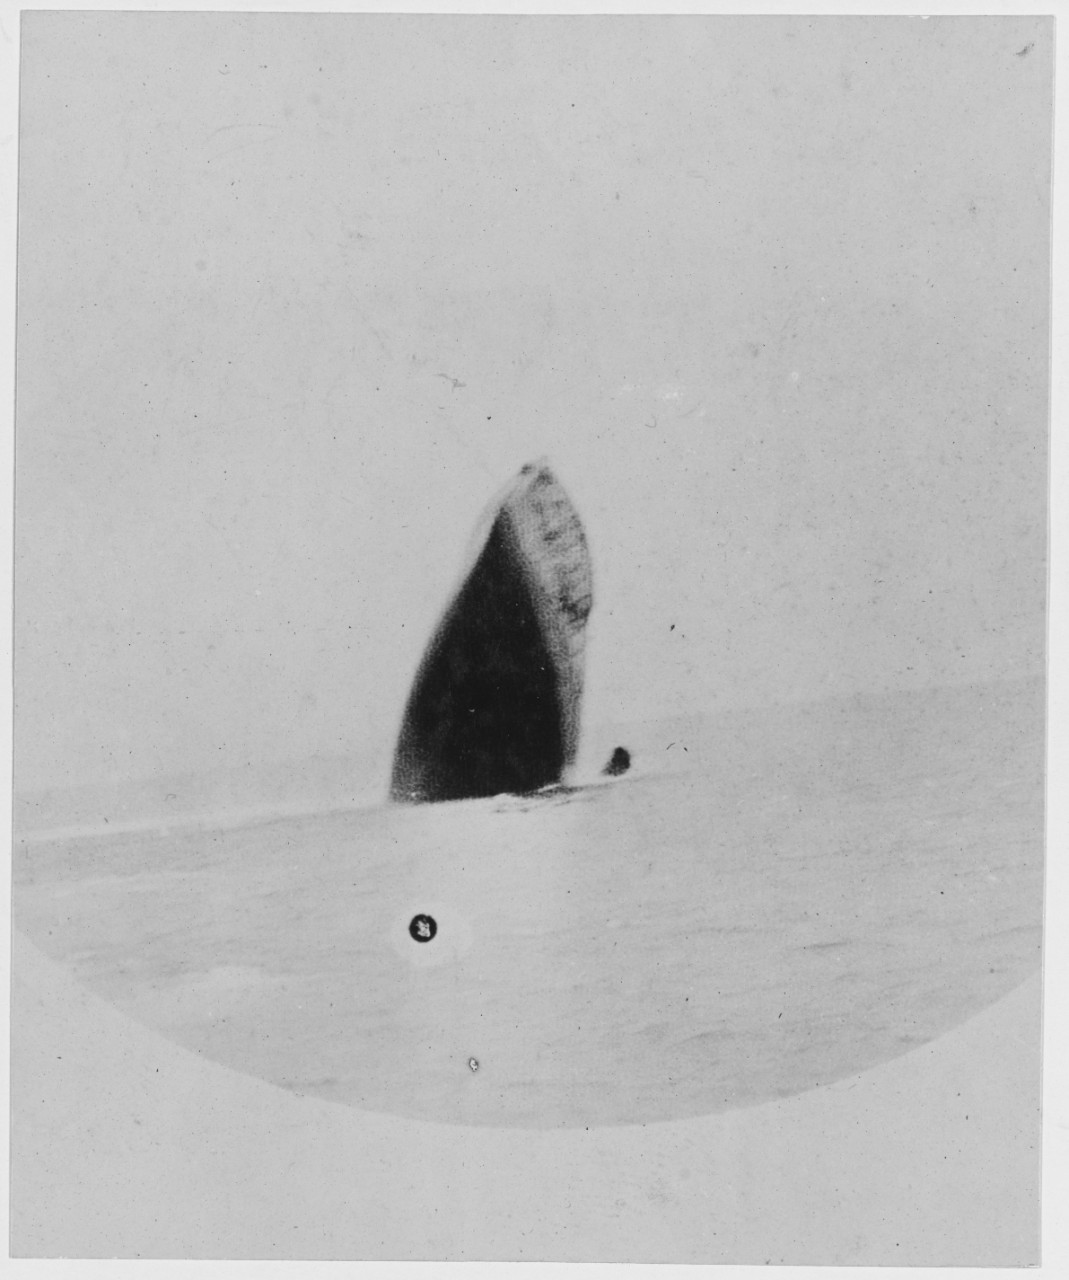 Sinking of a U-Boat, November 17, 1918